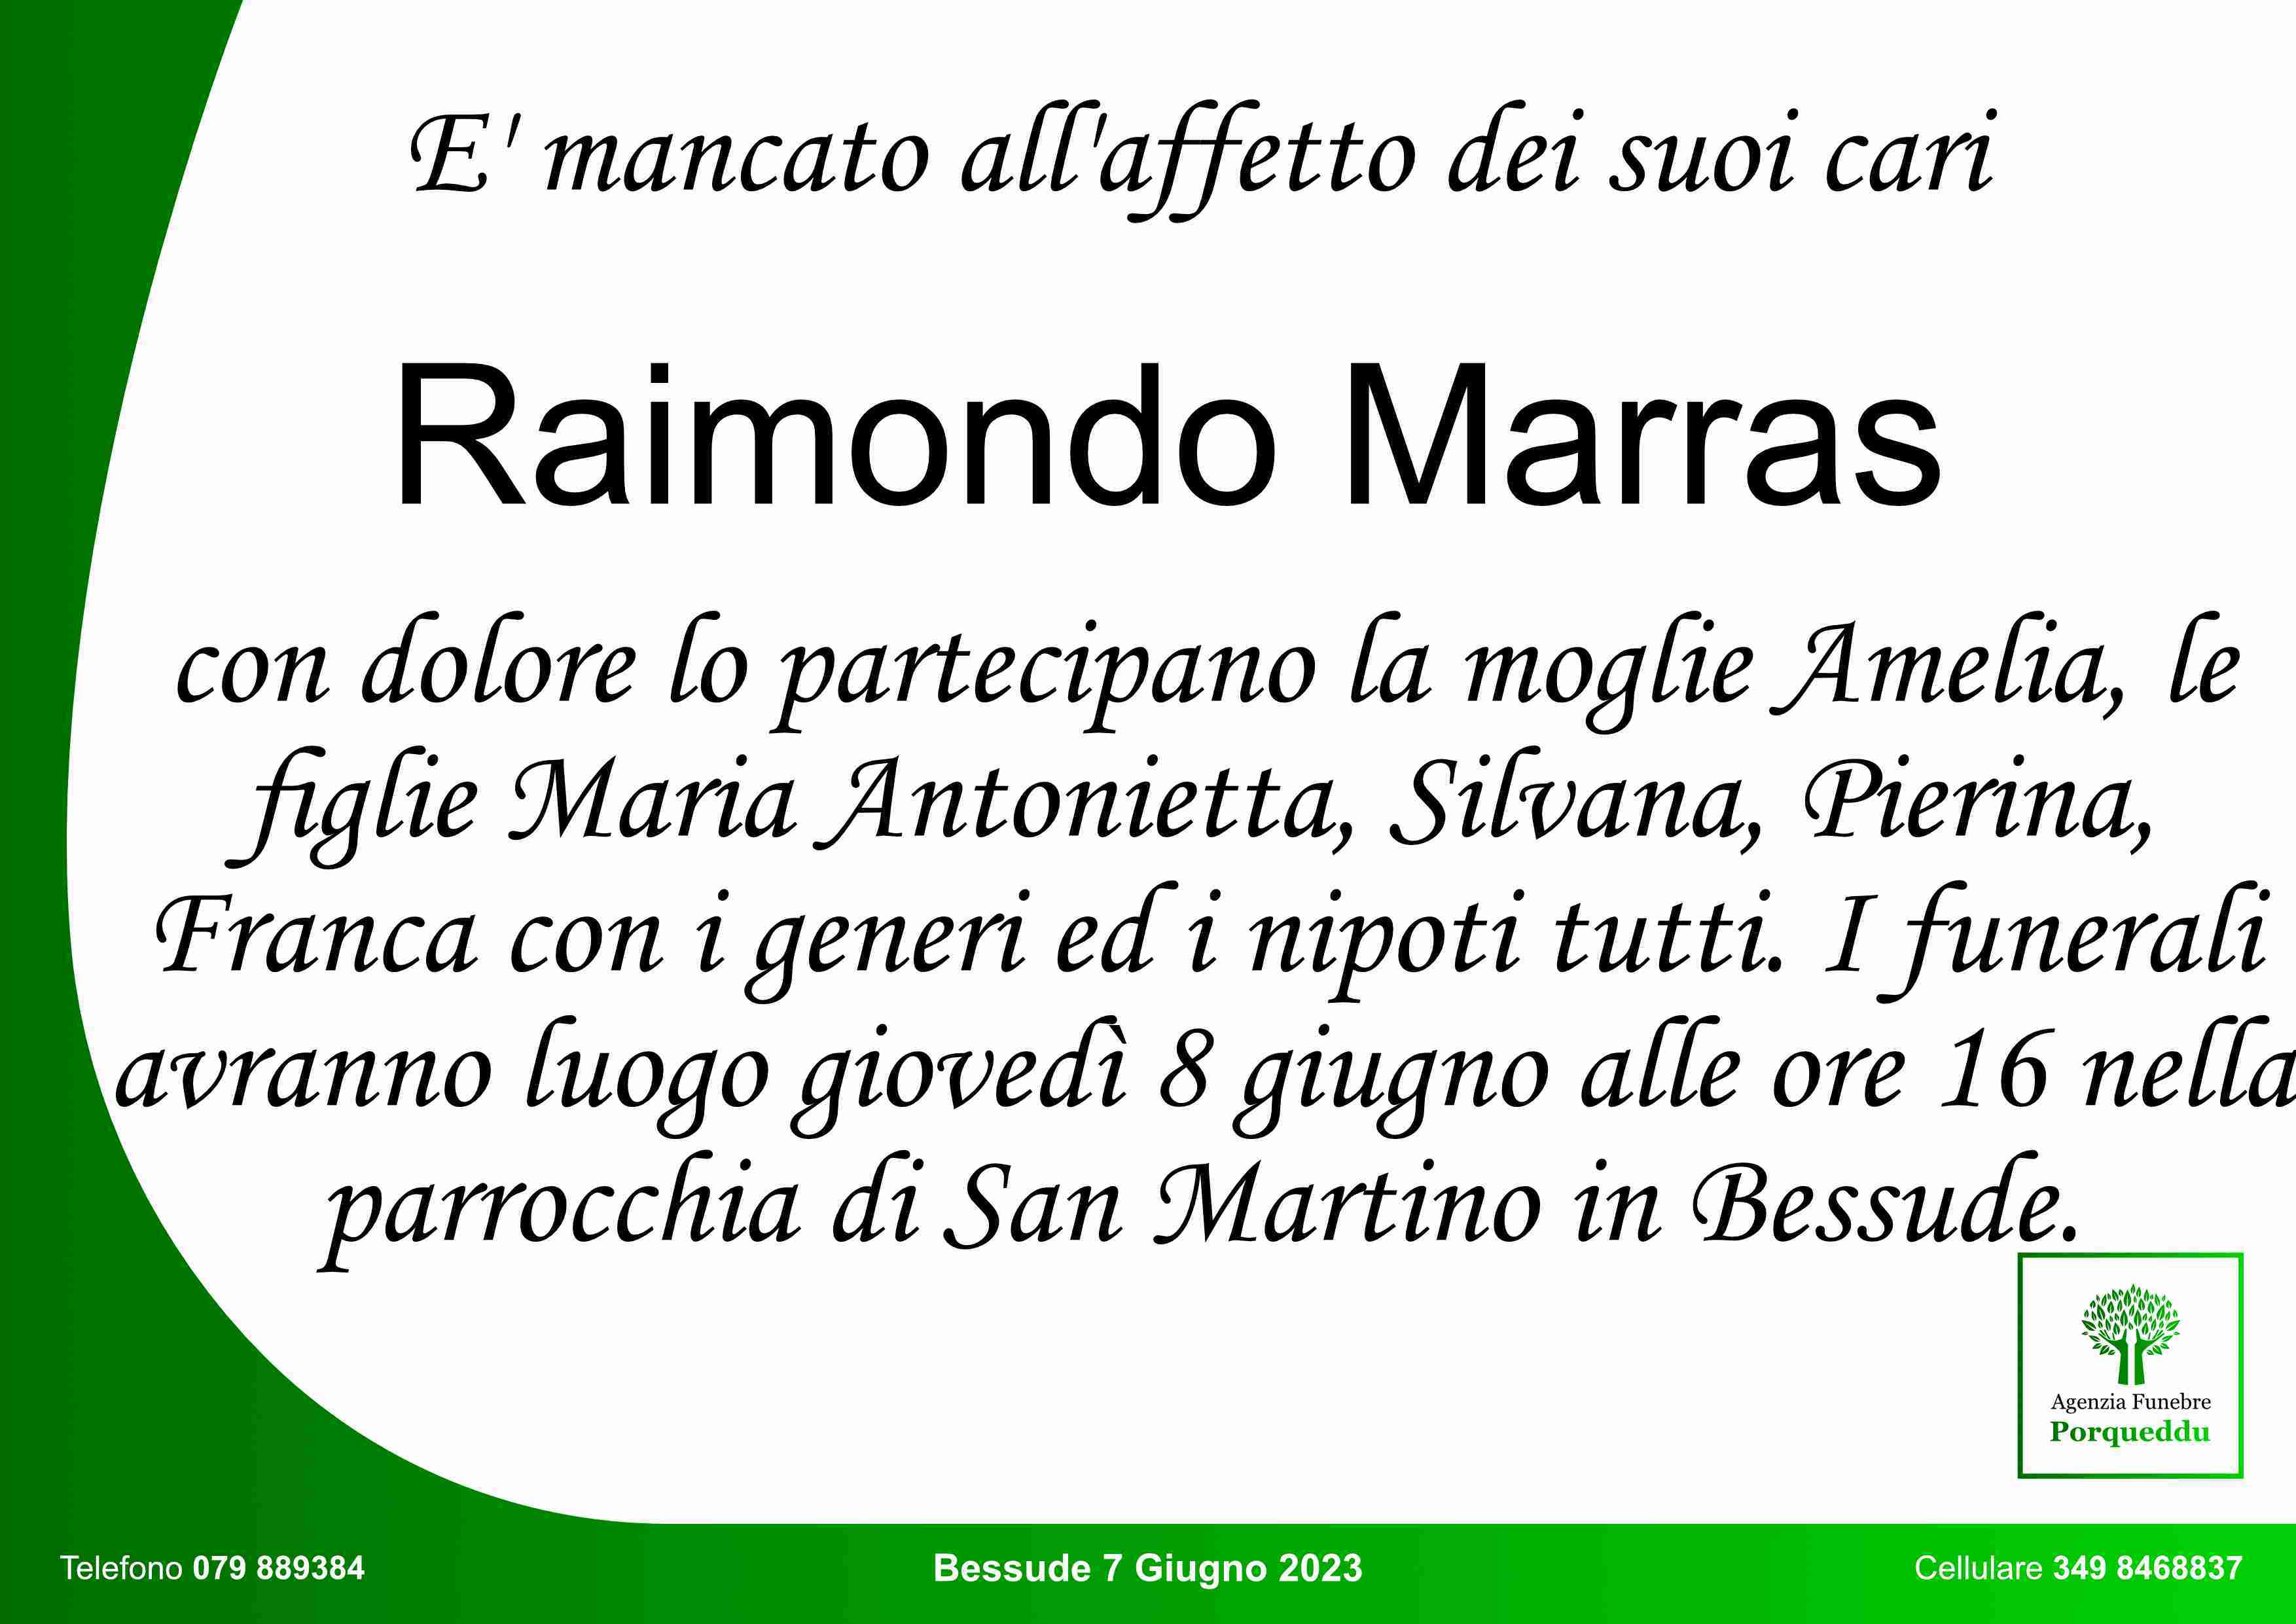 Raimondo Marras